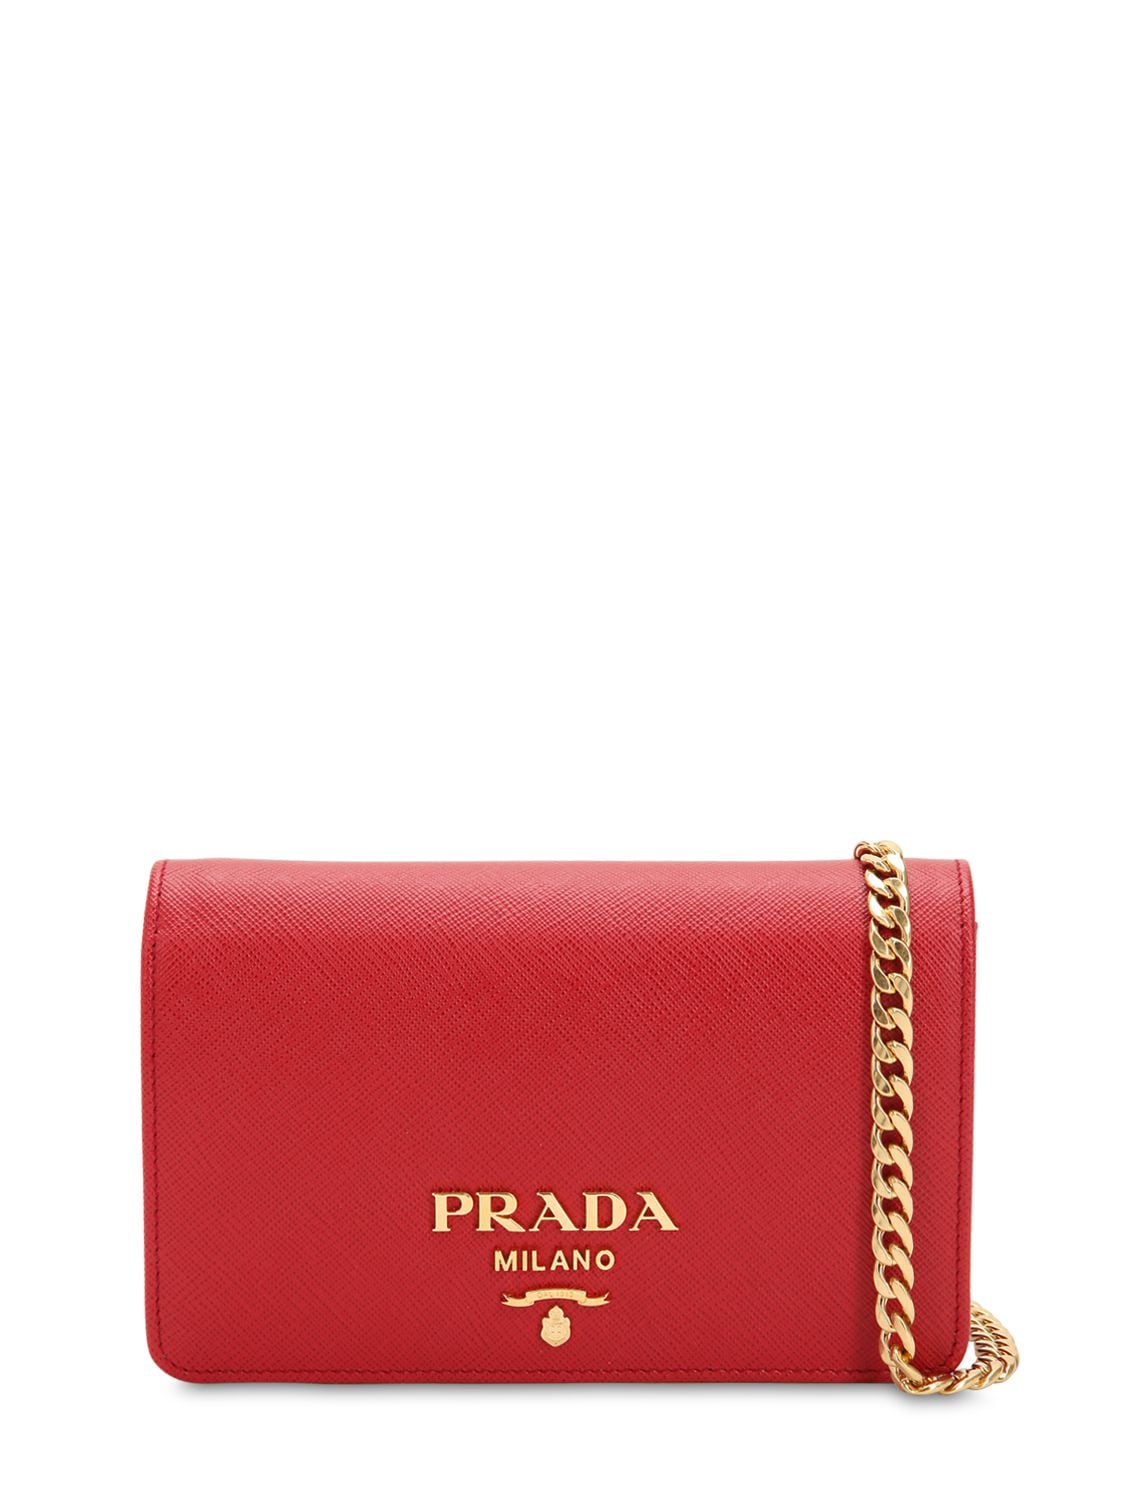 Prada Red Saffiano Leather Shoulder Bag